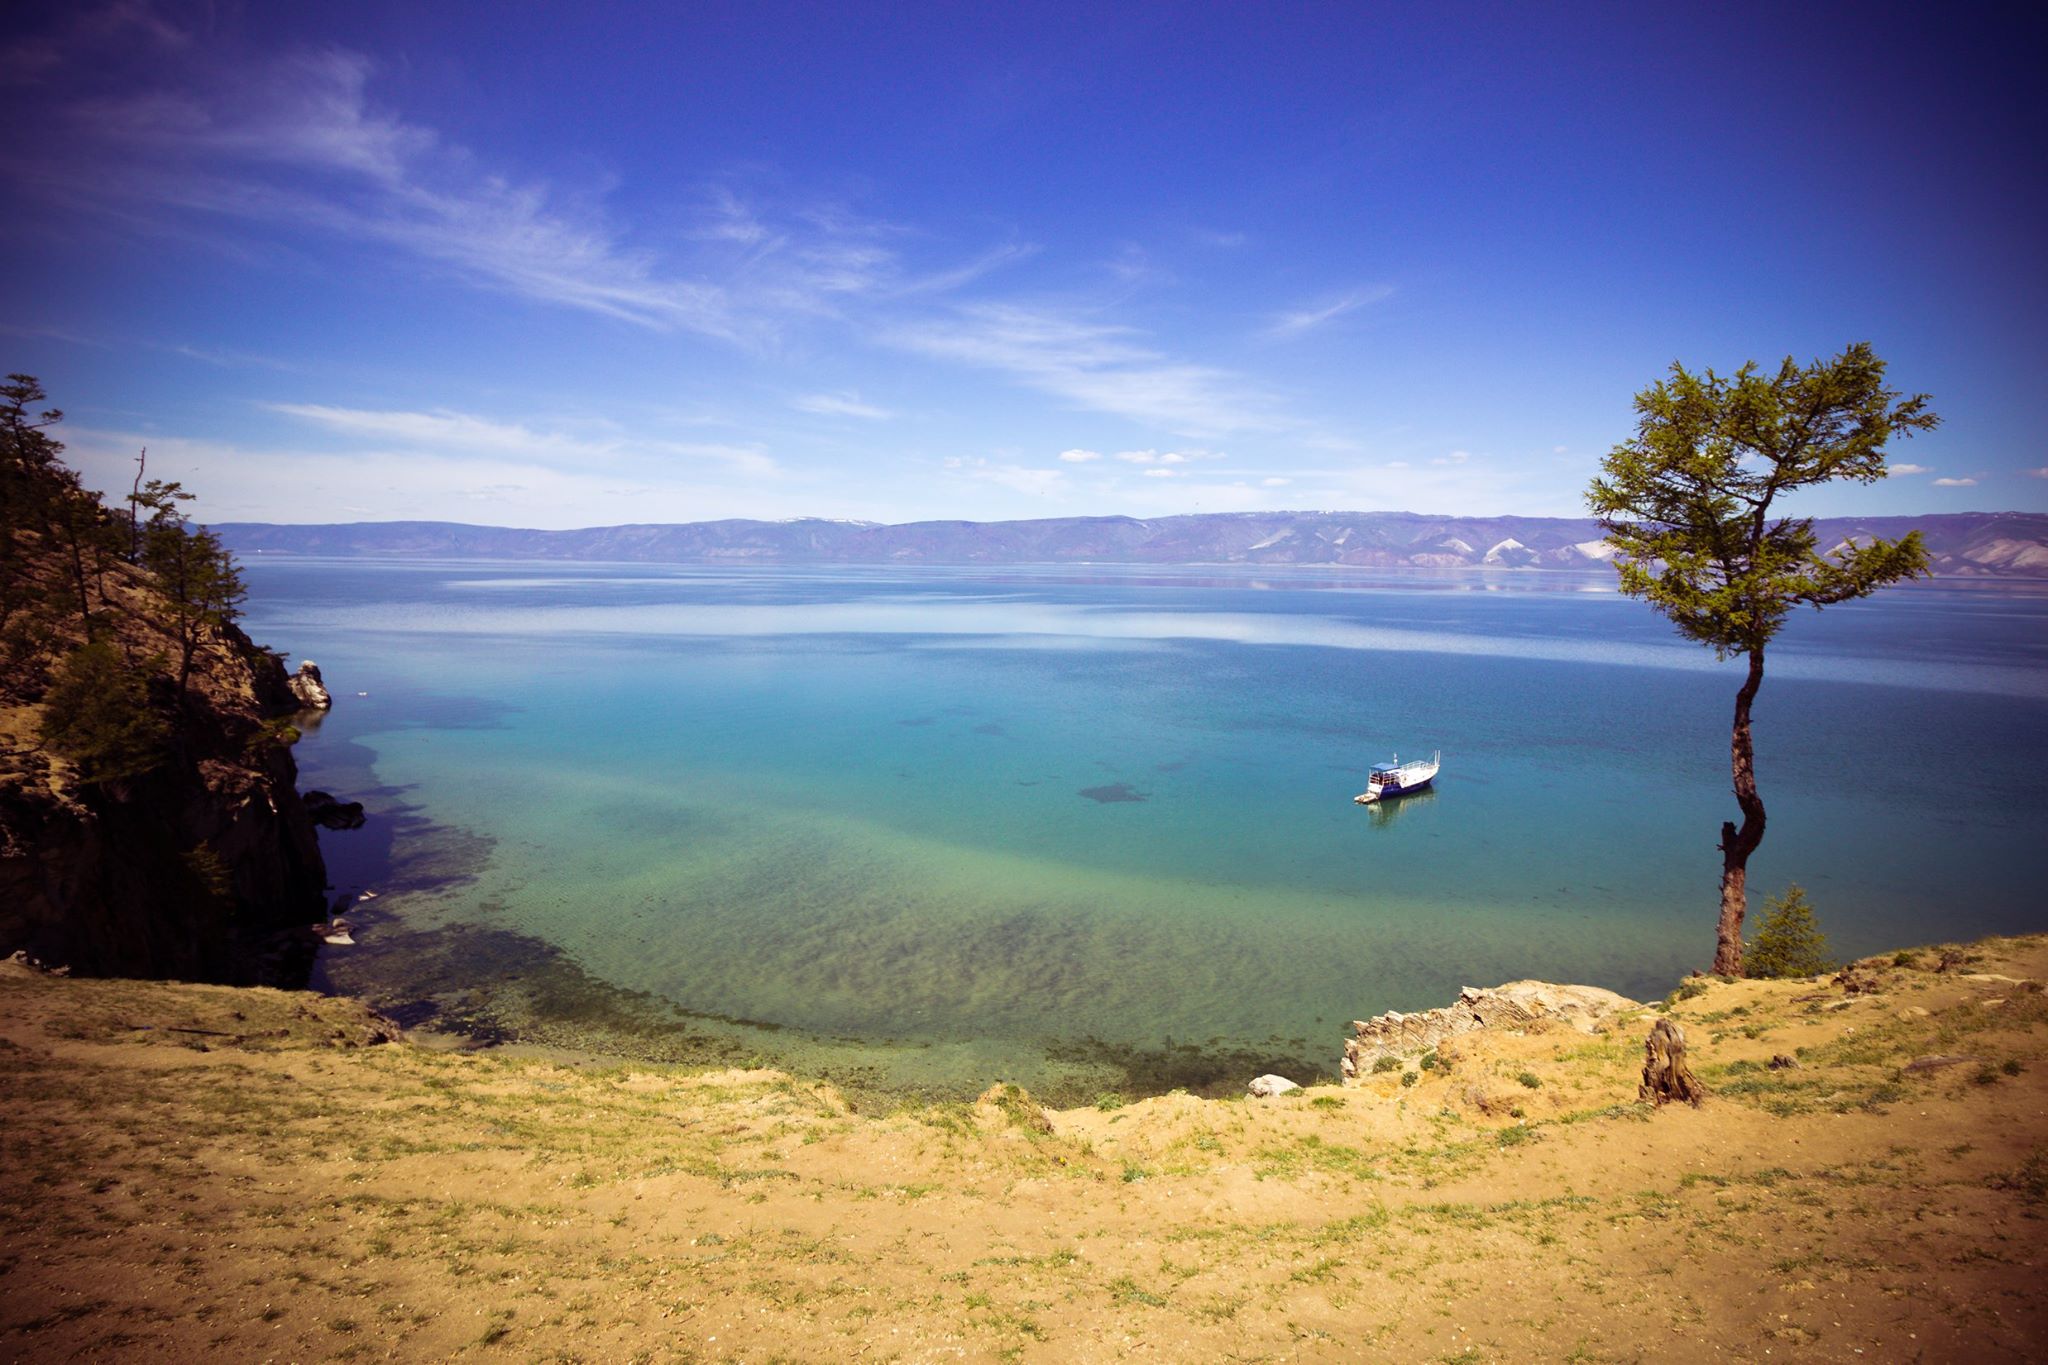 Der See und seine Umgebung beheimaten Tierarten, die sonst nirgends auf der Welt vorkommen. Seit 1996 gehört das Ökosystem des Baikals zum UNESCO-Weltkulturerbe.